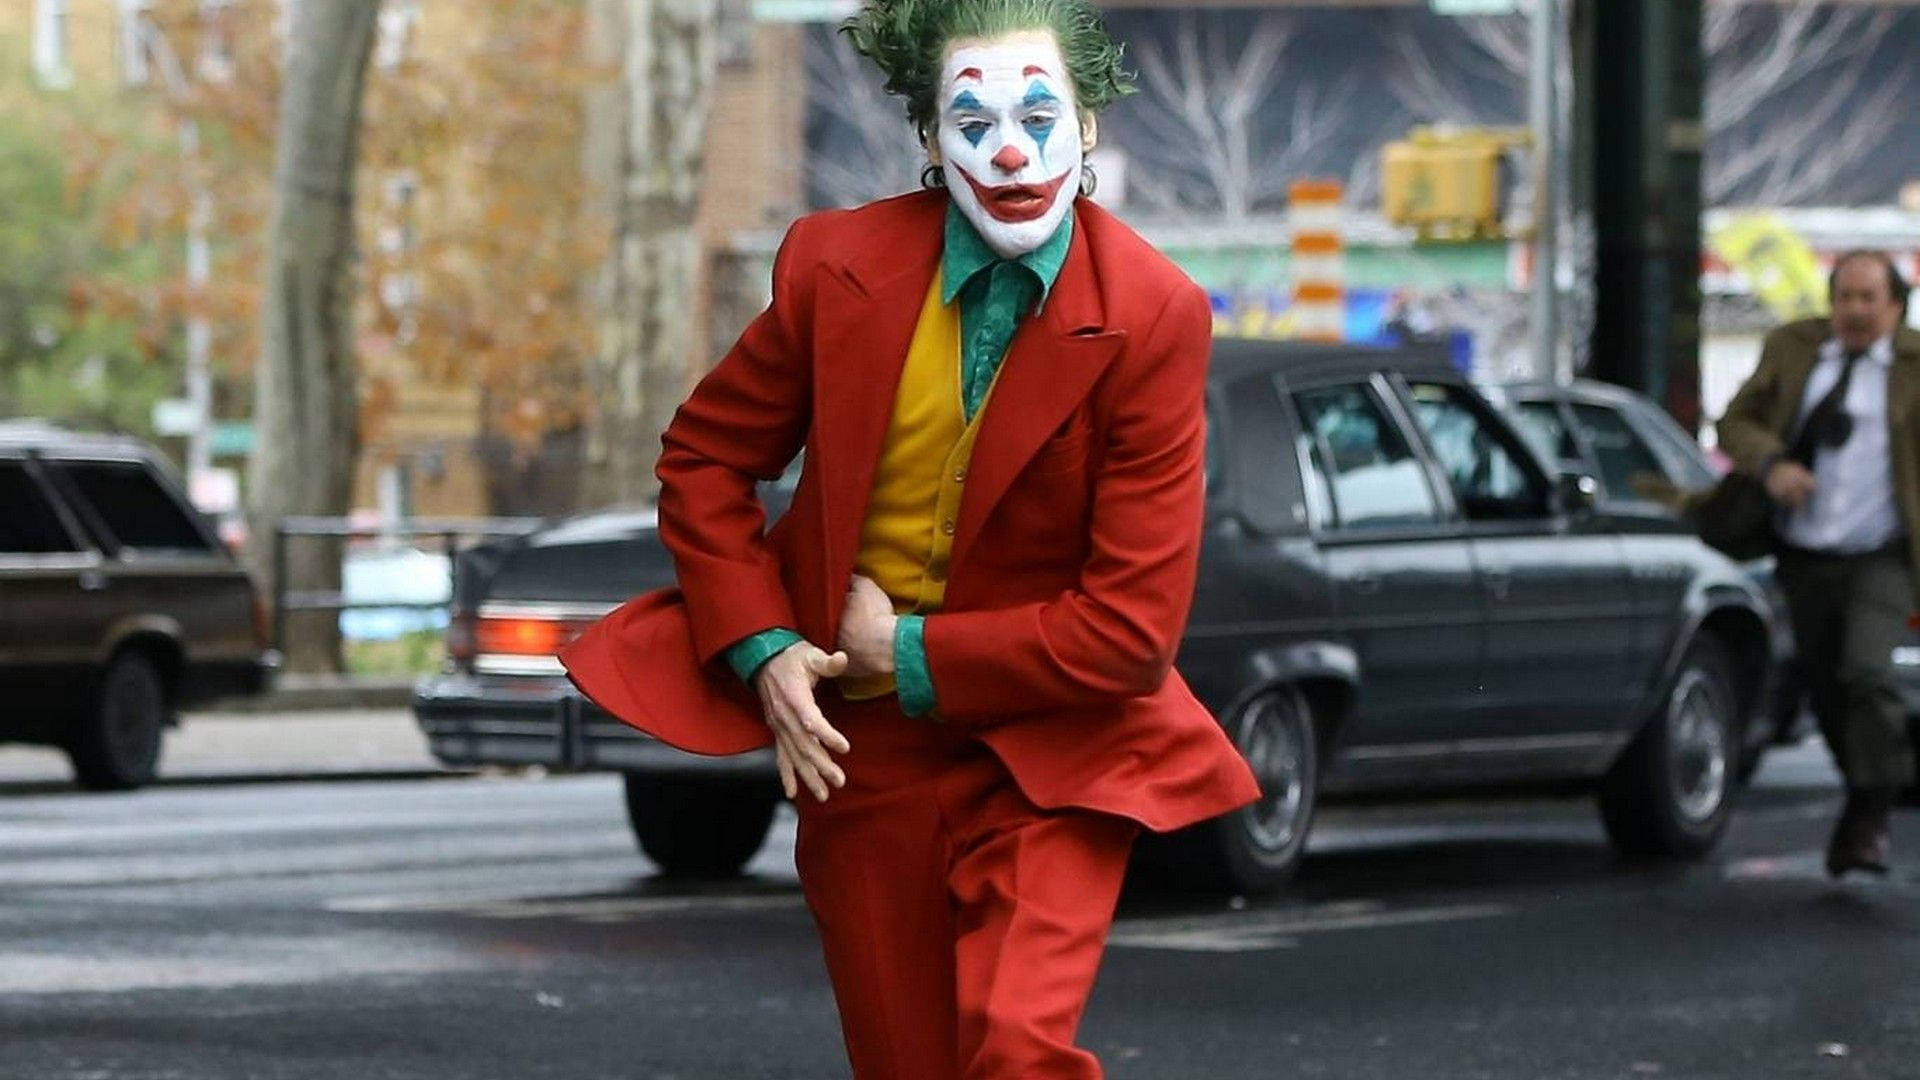 Running Clown Joker 2019 Background